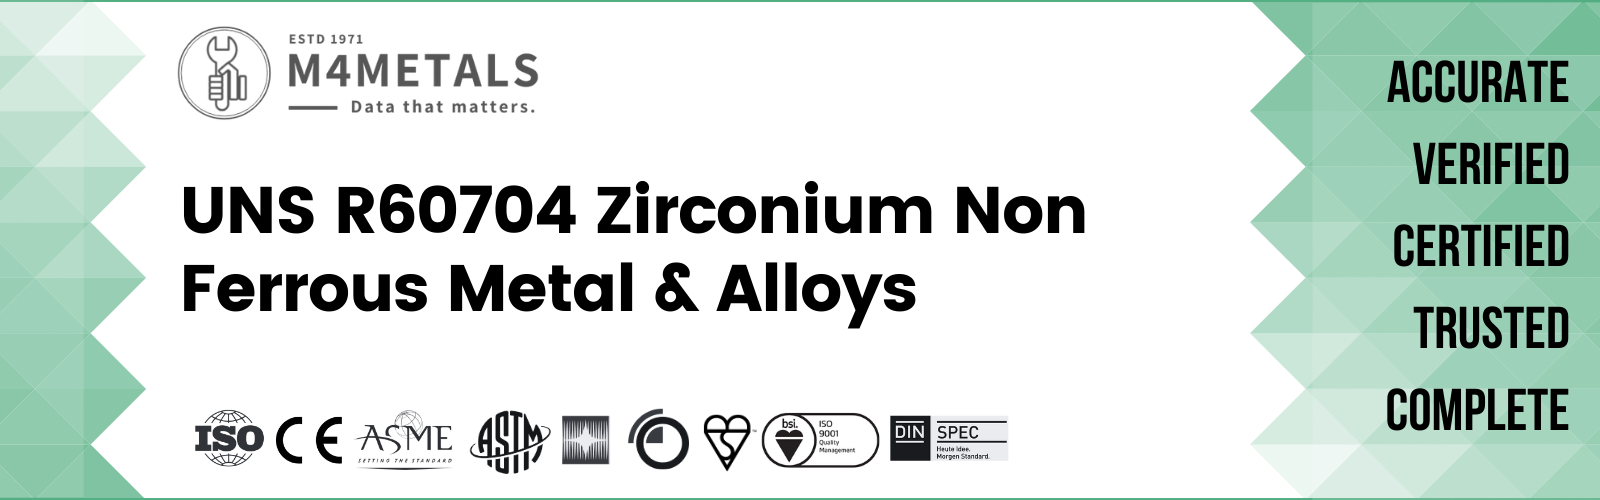 Zirconium UNS R60704